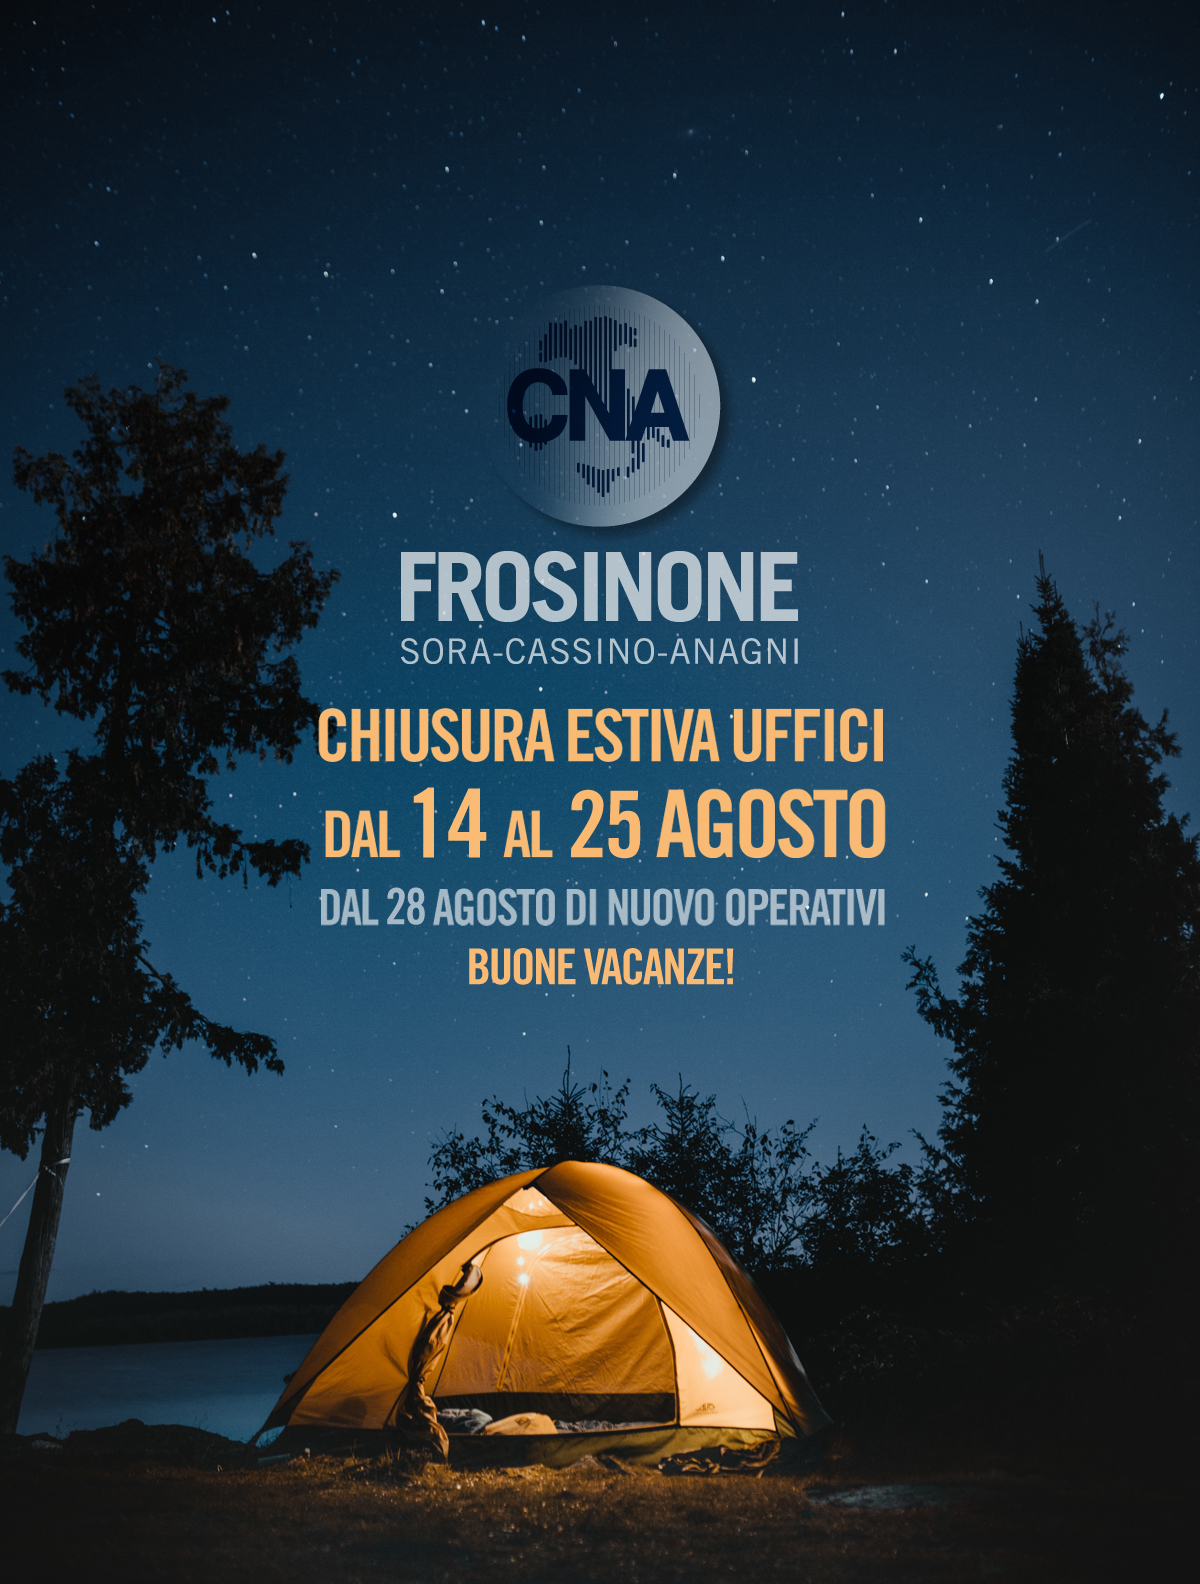 Featured image for “Chiusura Estiva Uffici dal 14 al 25 agosto”